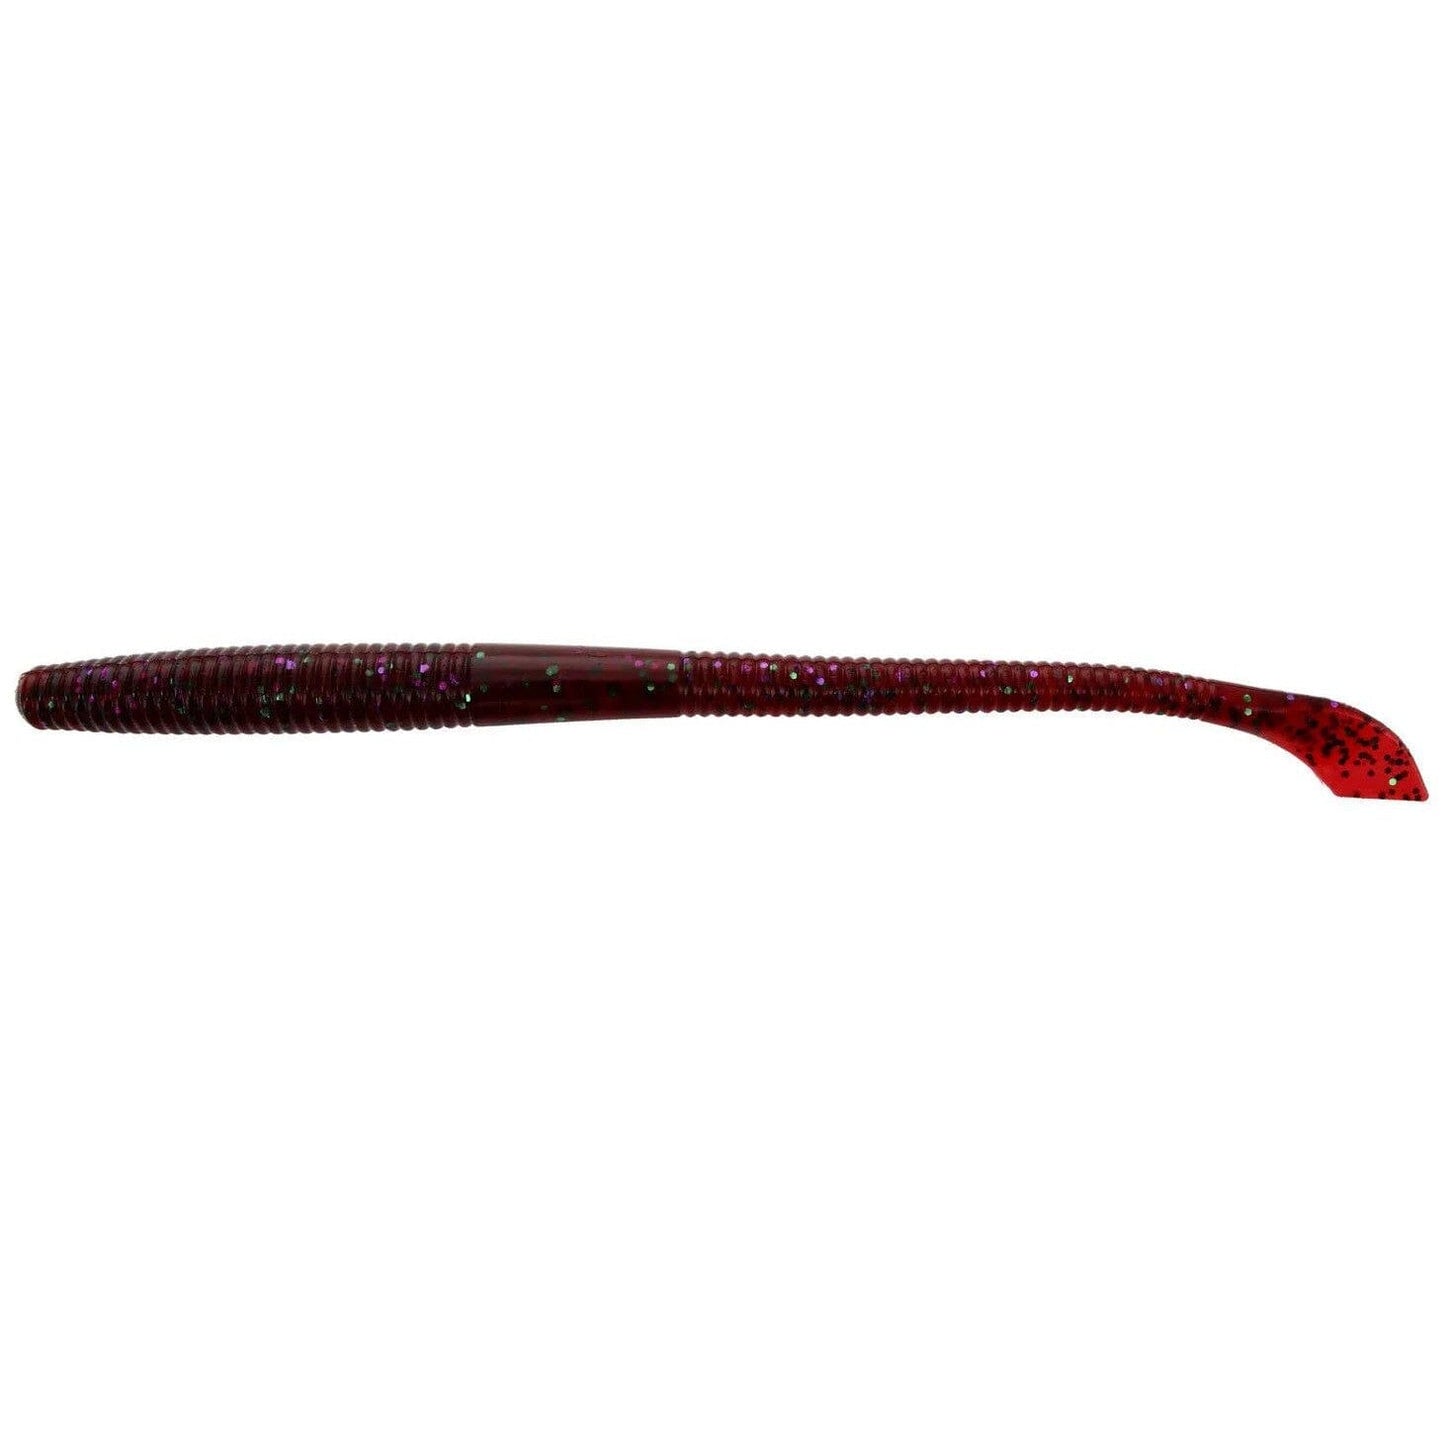 Yamamoto Kut Tail Worm Plum Candy – Hammonds Fishing